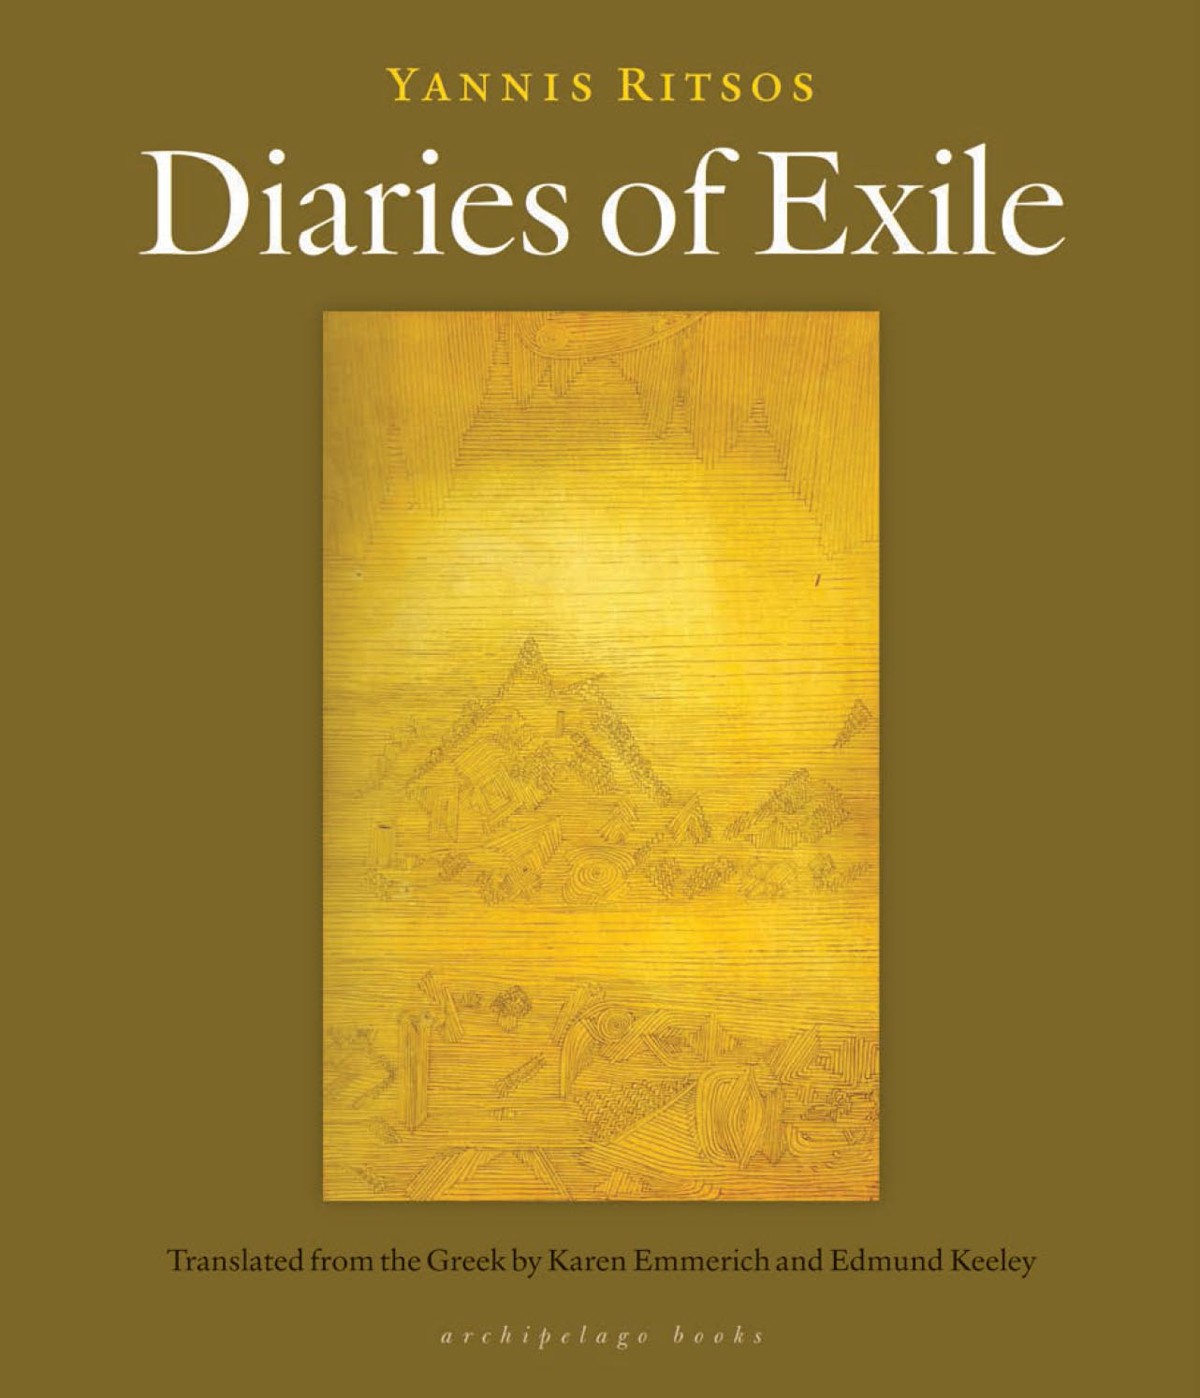 Рицос Яннис - Diaries of Exile скачать бесплатно